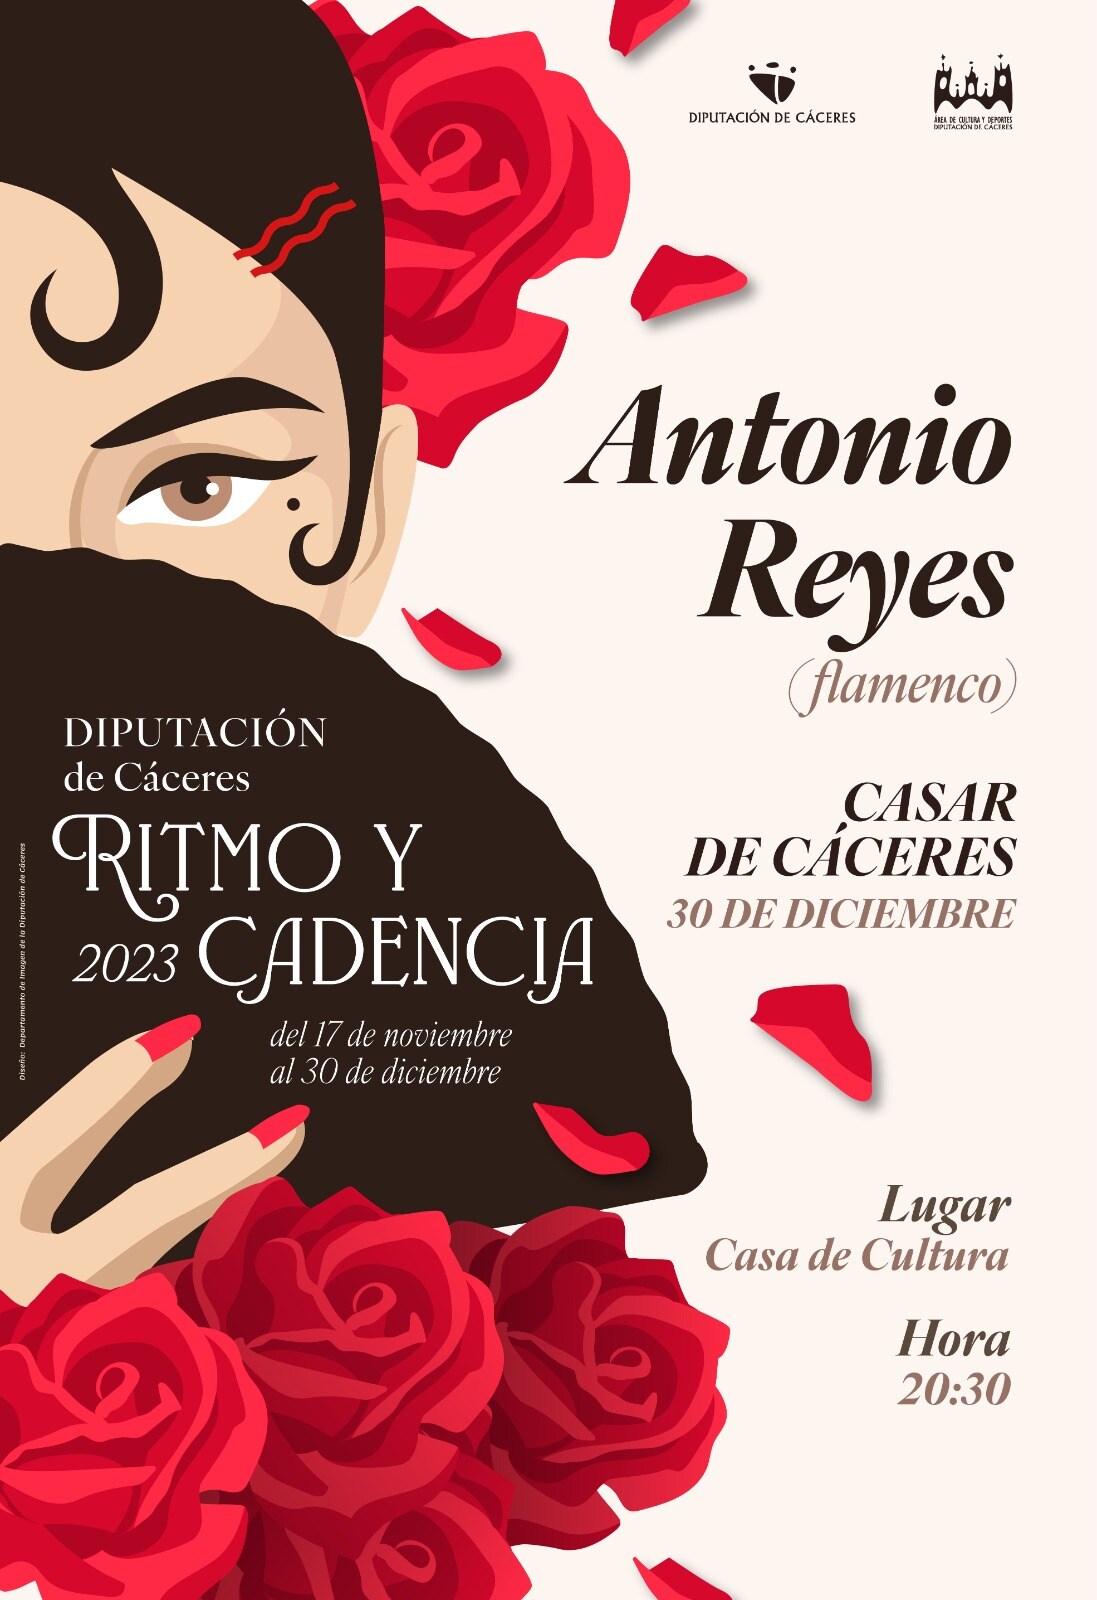 El cantaor de flamenco Antonio Reyes actuará este sábado en la casa de cultura